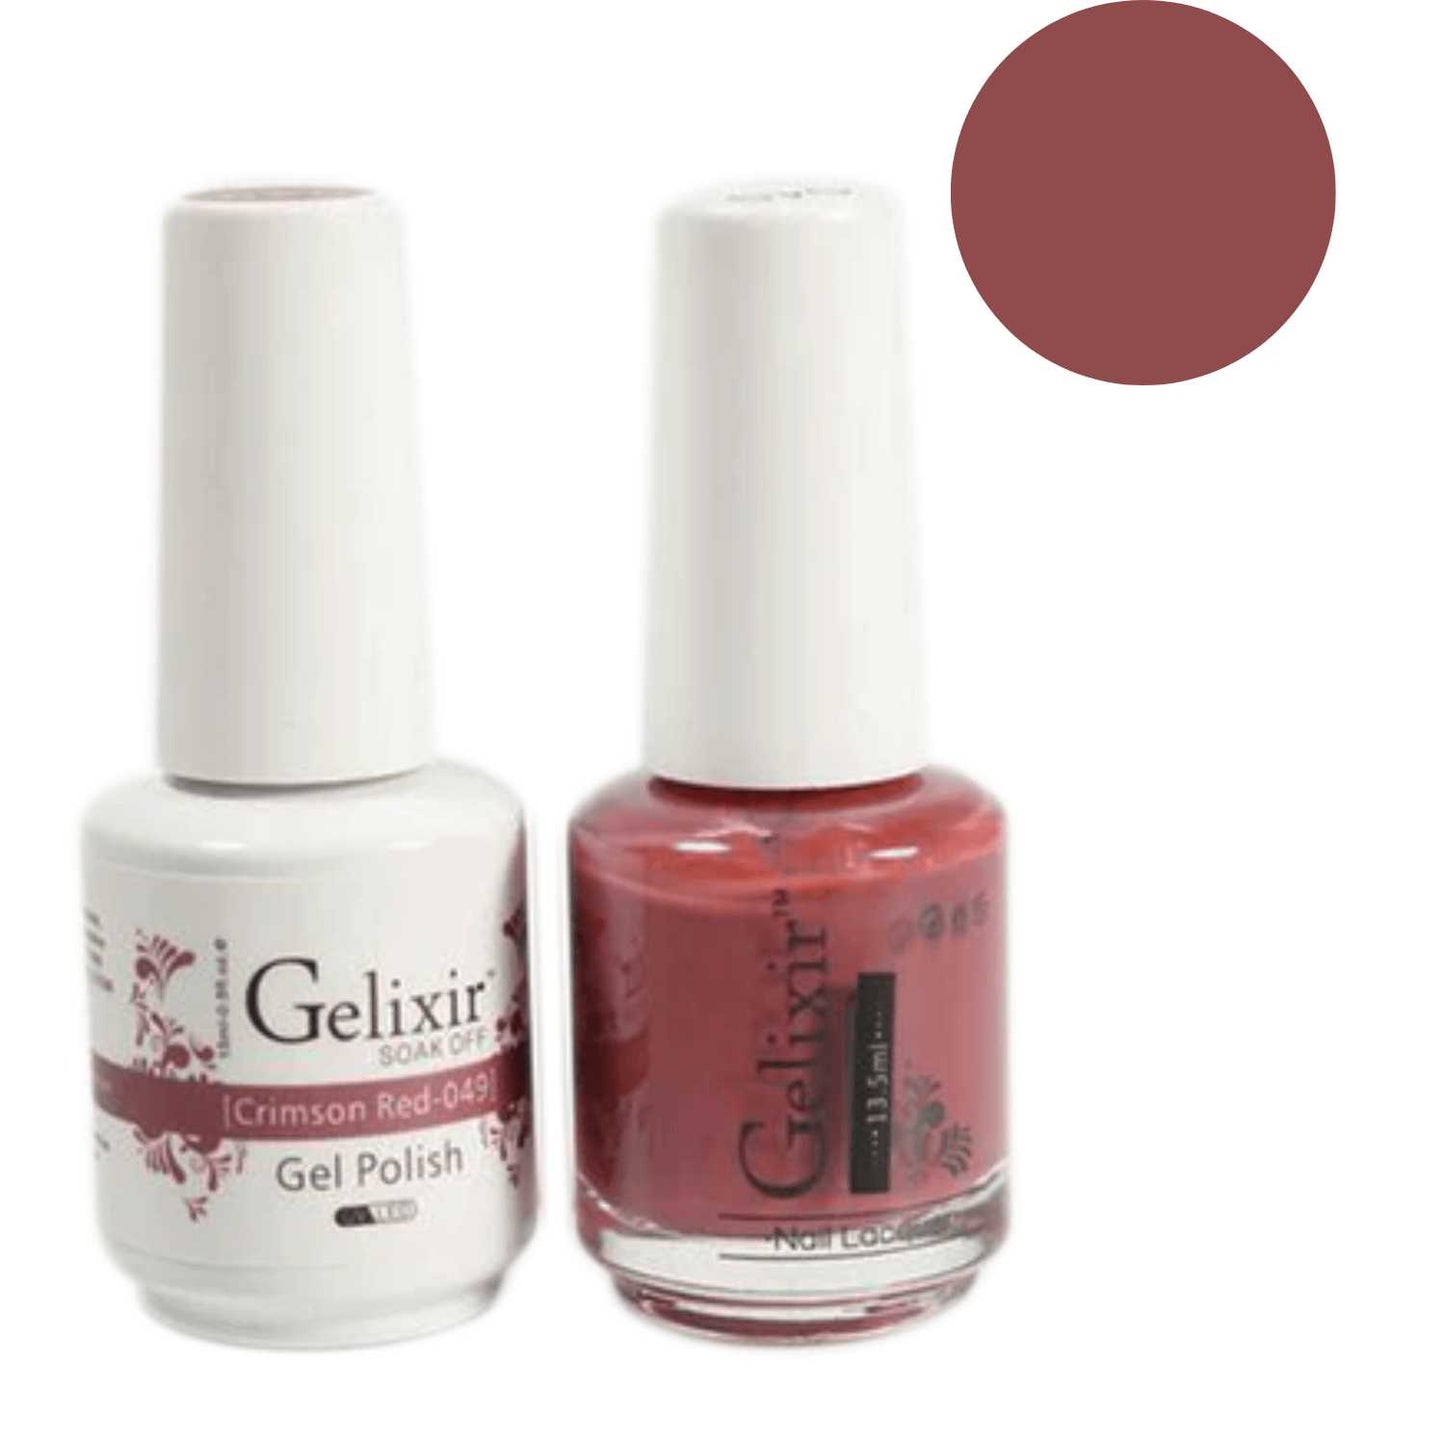 Gelixir Gel Polish & Nail Lacquer Duo Crimson Red - #49 Gelixir